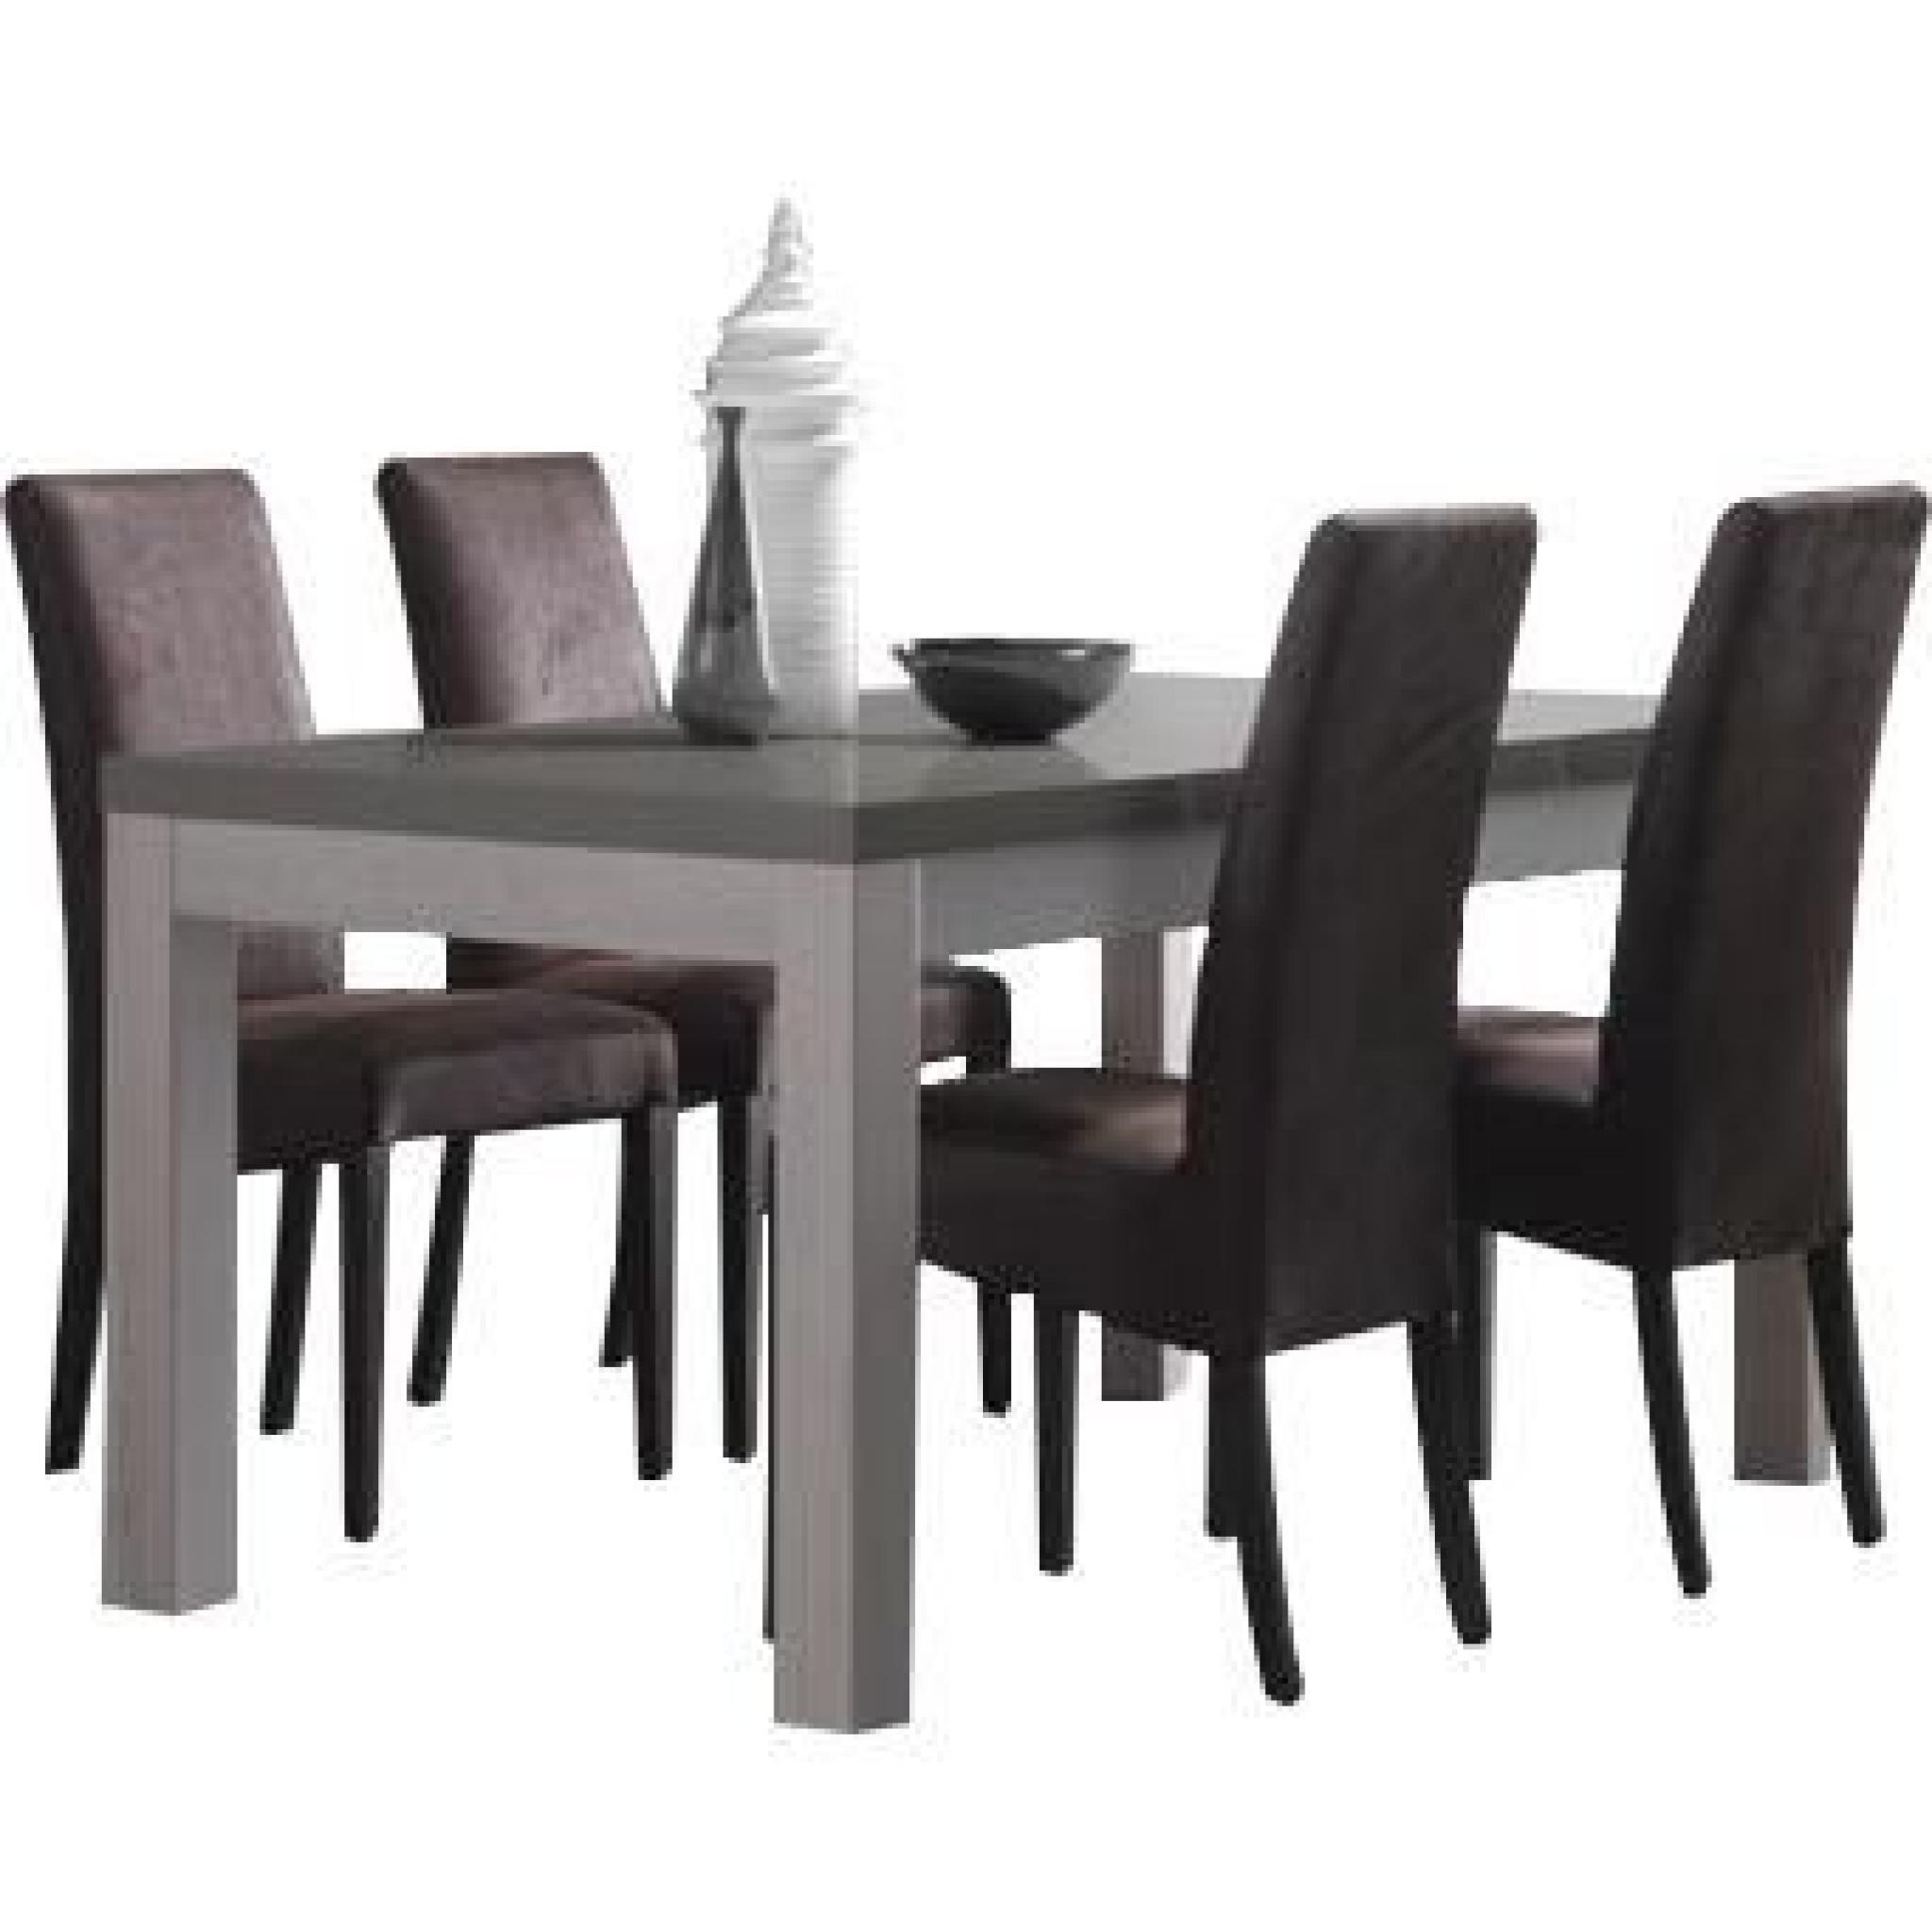 Table en bois et gris laqué 160 cm + 4 chaises en tissu brun foncé